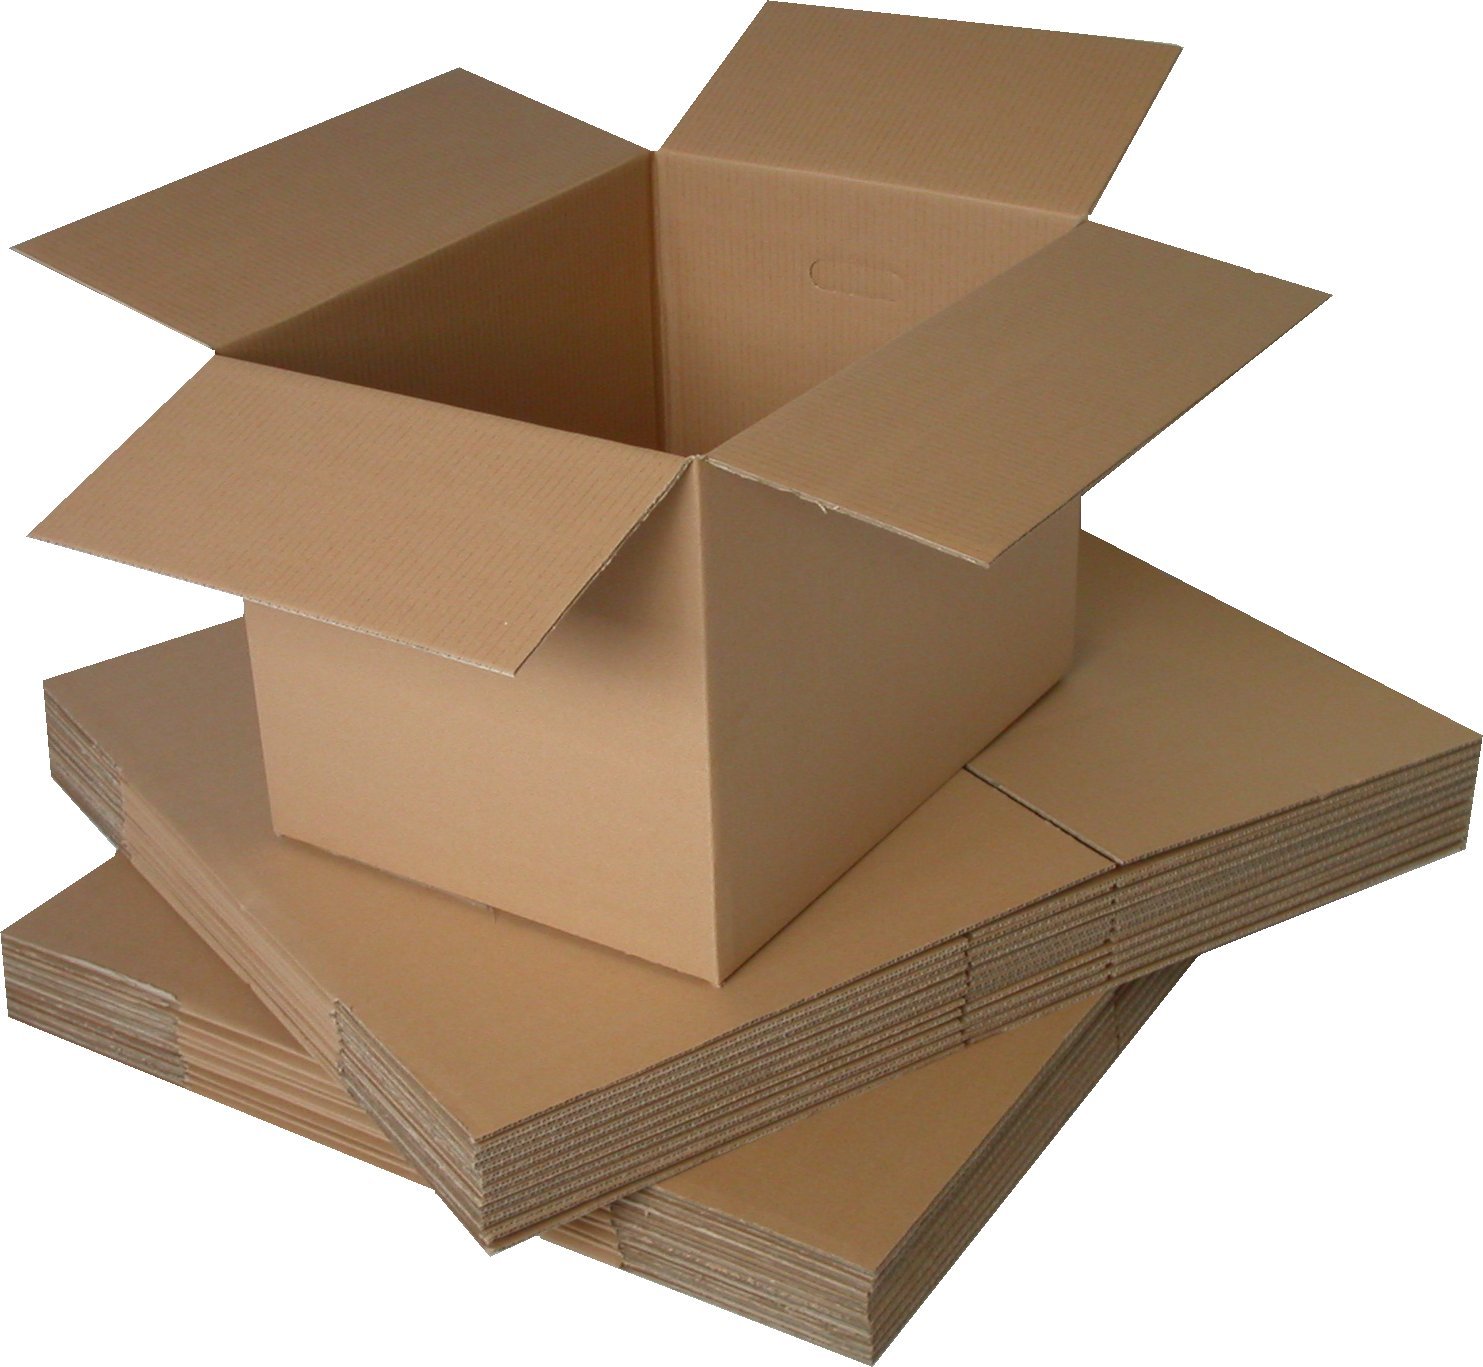 giấy Duplex dùng để sản xuất hộp giấy